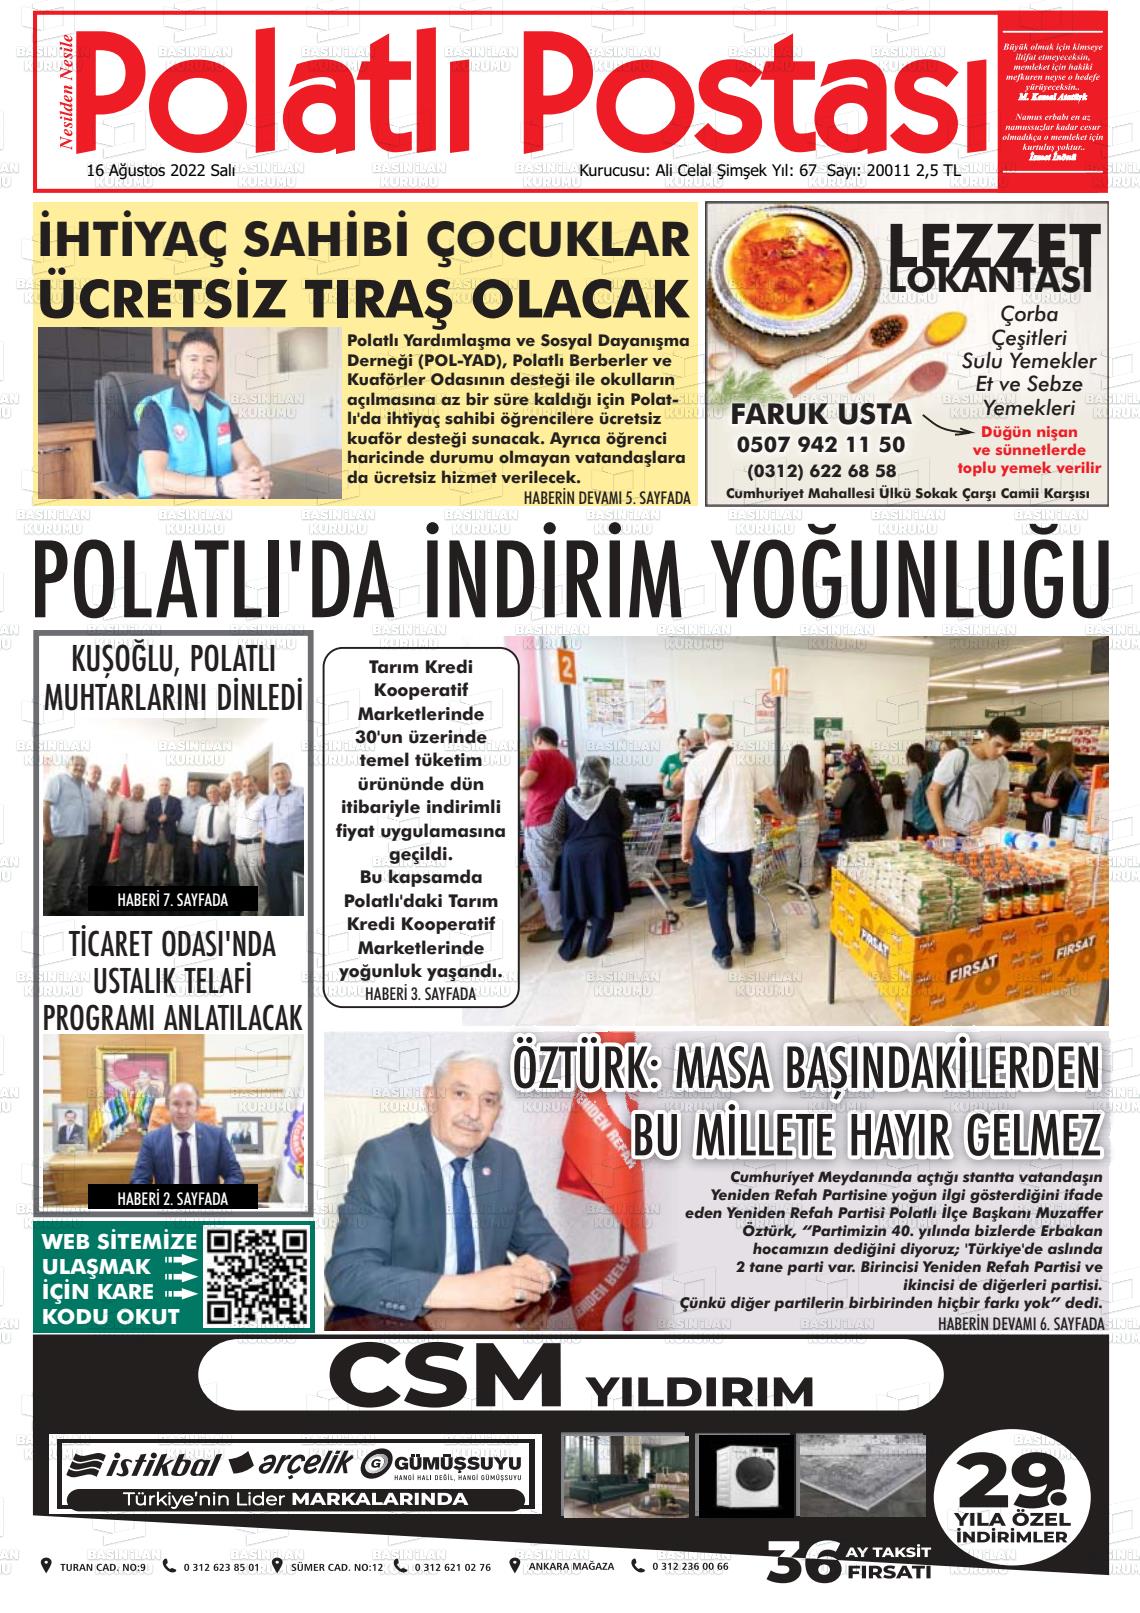 16 Ağustos 2022 Polatlı Postası Gazete Manşeti